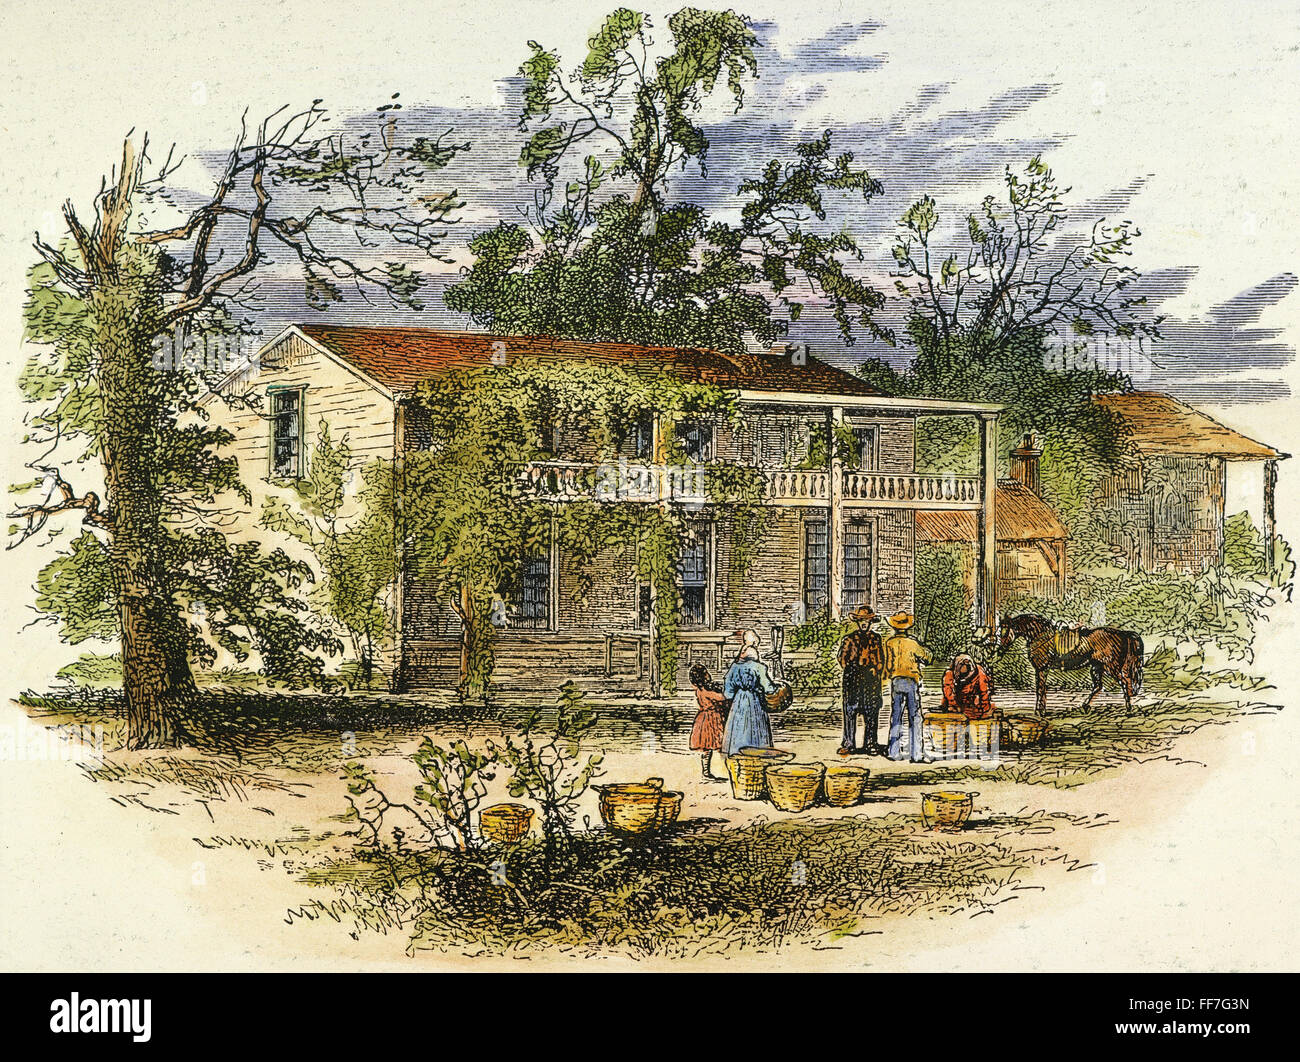 GEORGIA: PLANTATION. /nA planter's house in Georgia. Wood engraving, 19th century. Stock Photo